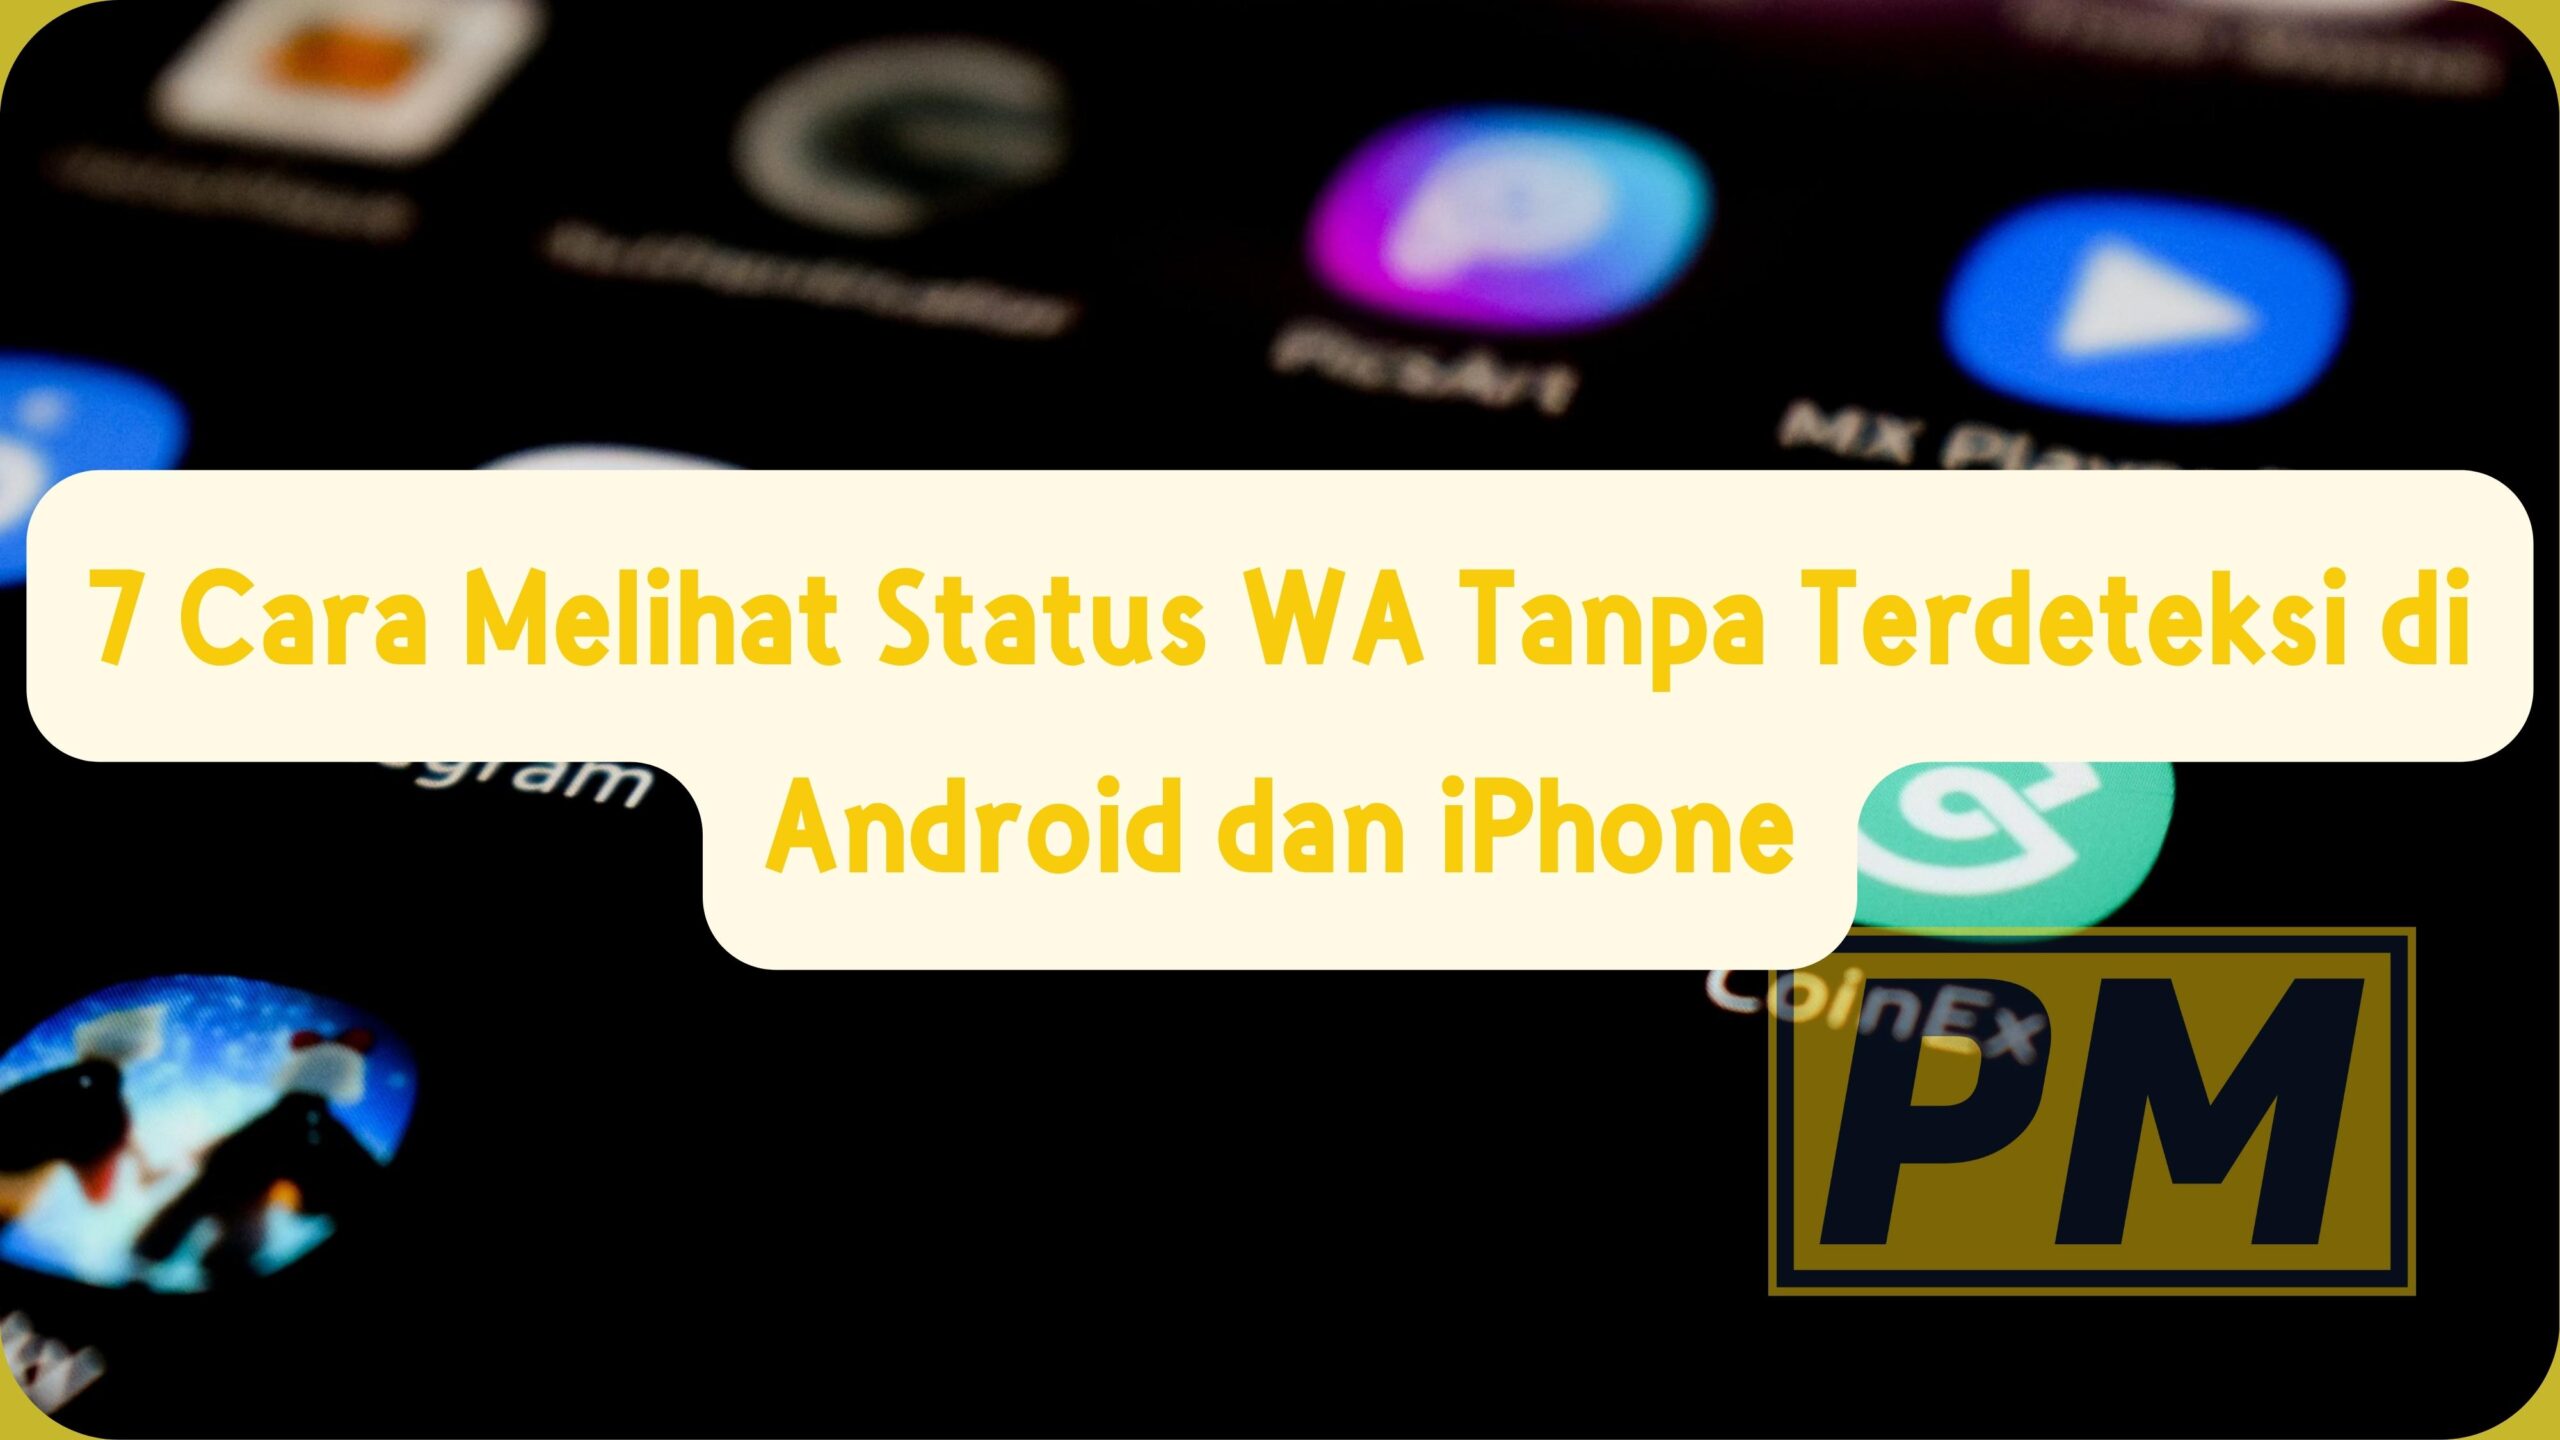 7 Cara Melihat Status WA Tanpa Terdeteksi di Android dan iPhone